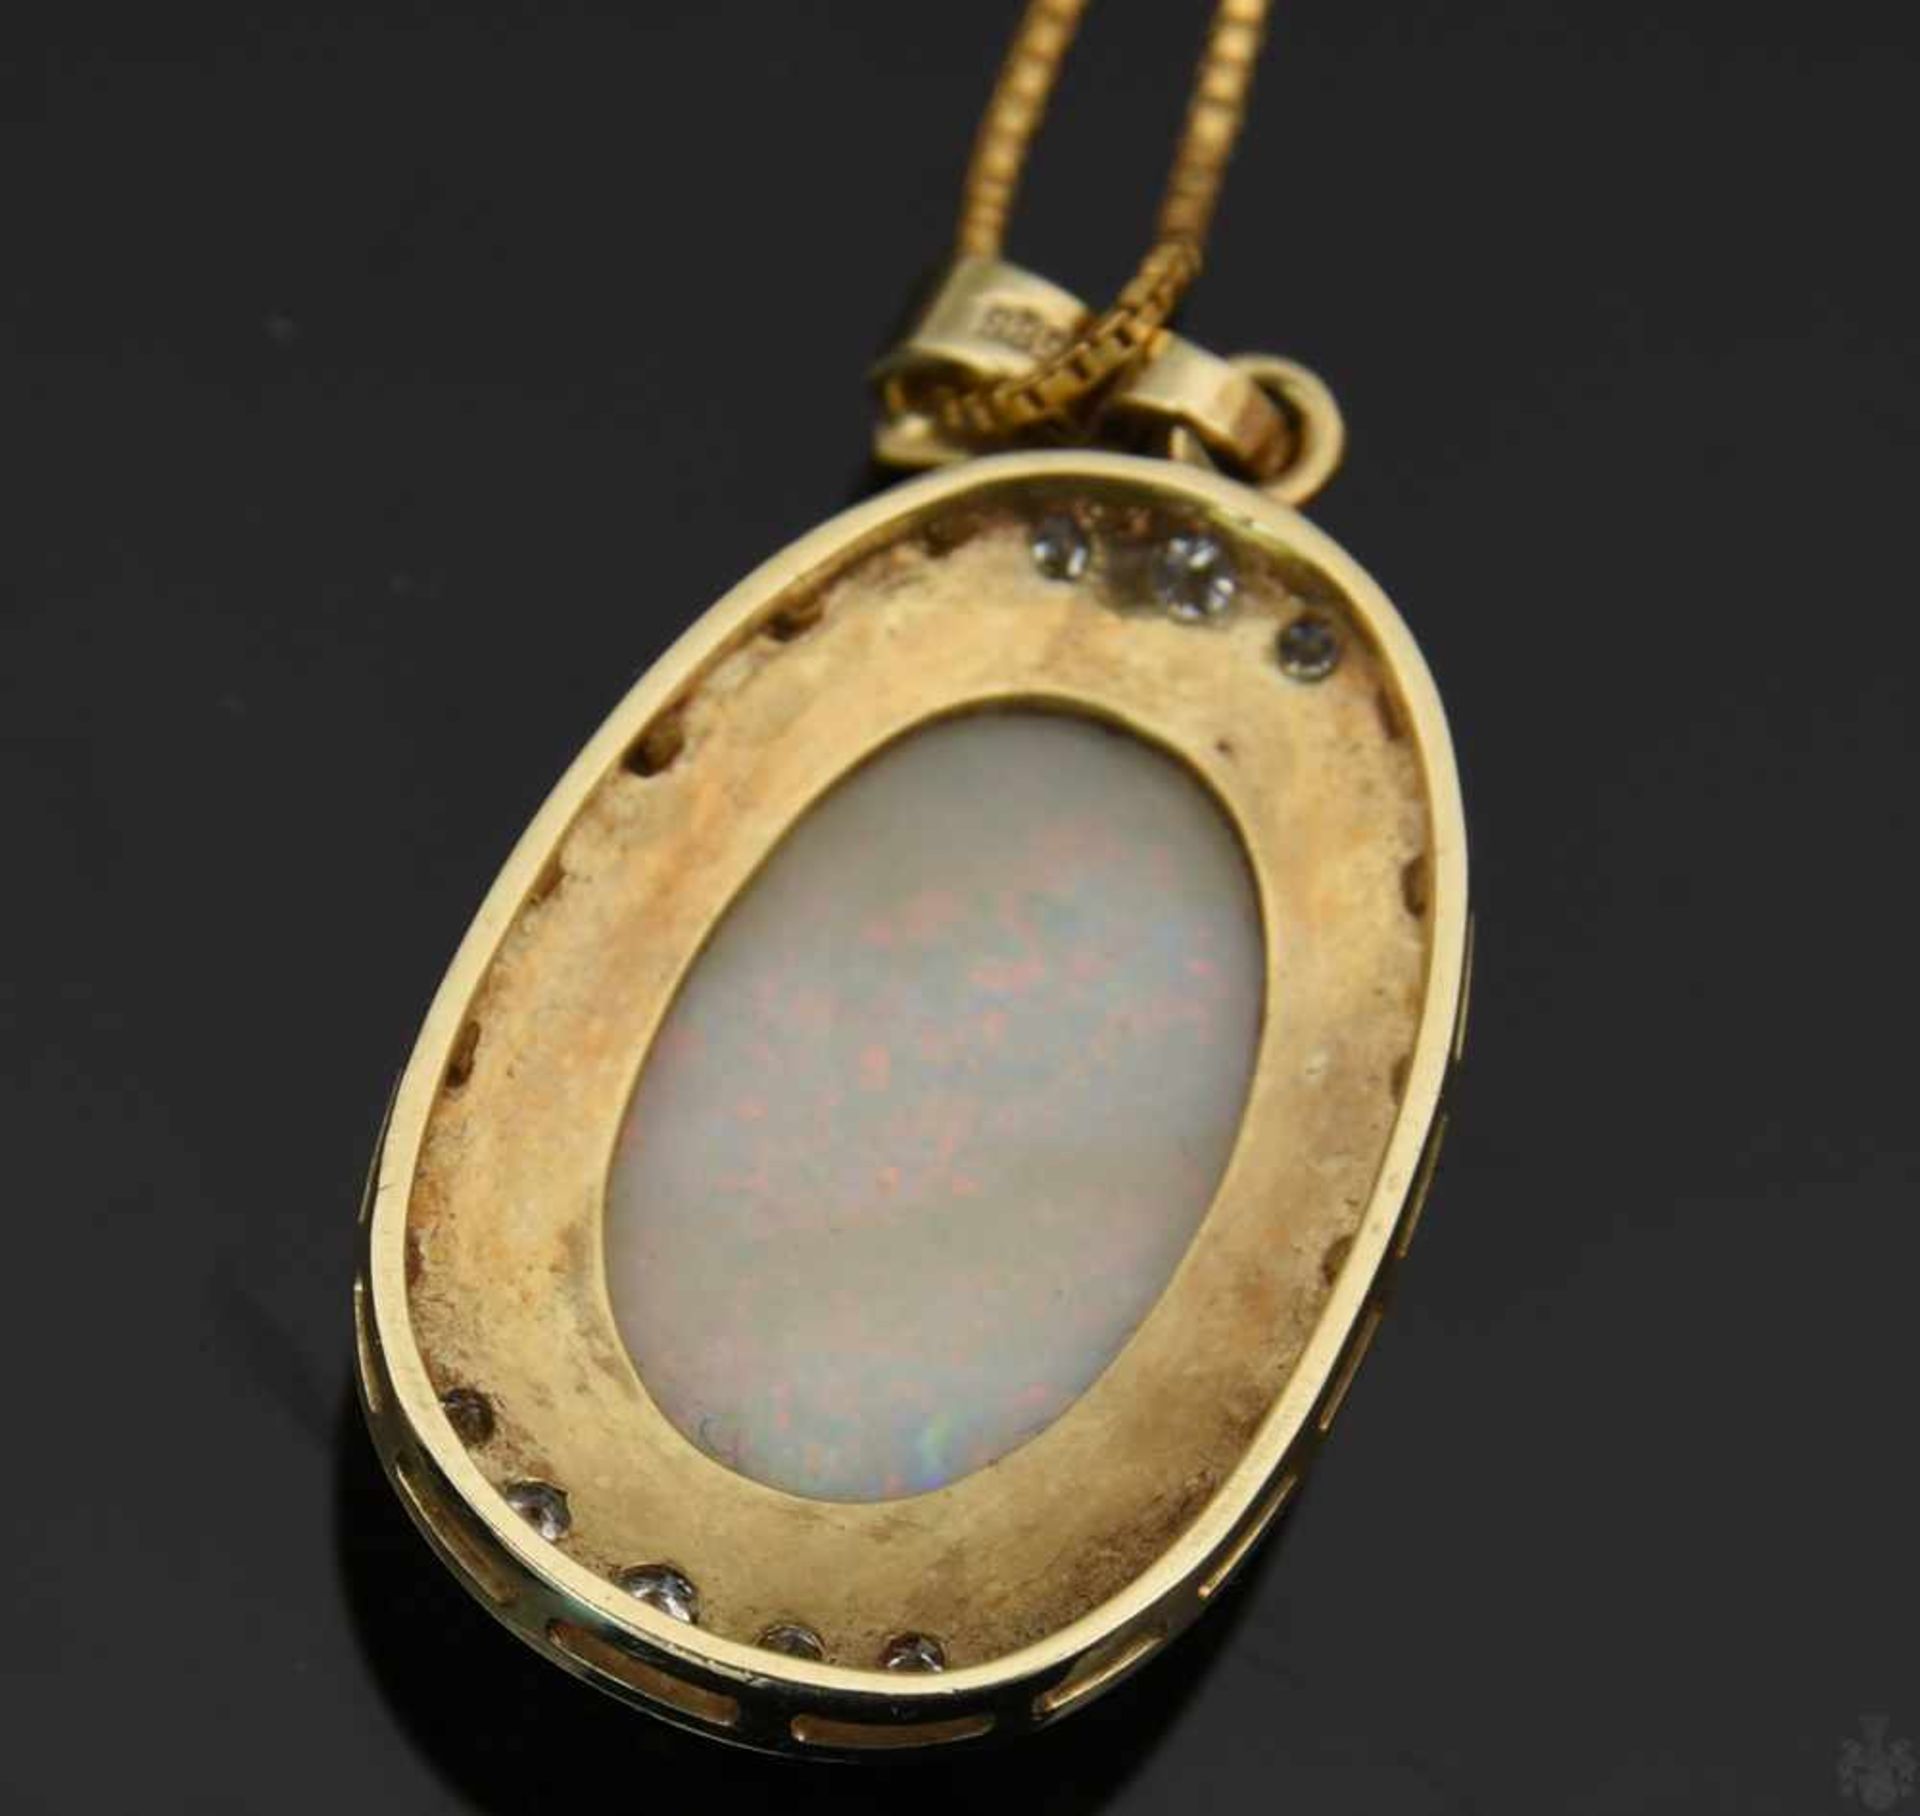 HALSKETTE MIT ANHÄNGER UND RING , mit Opalen und Brillianten.Oval geschliffene Opale mit umlaufenden - Image 7 of 9